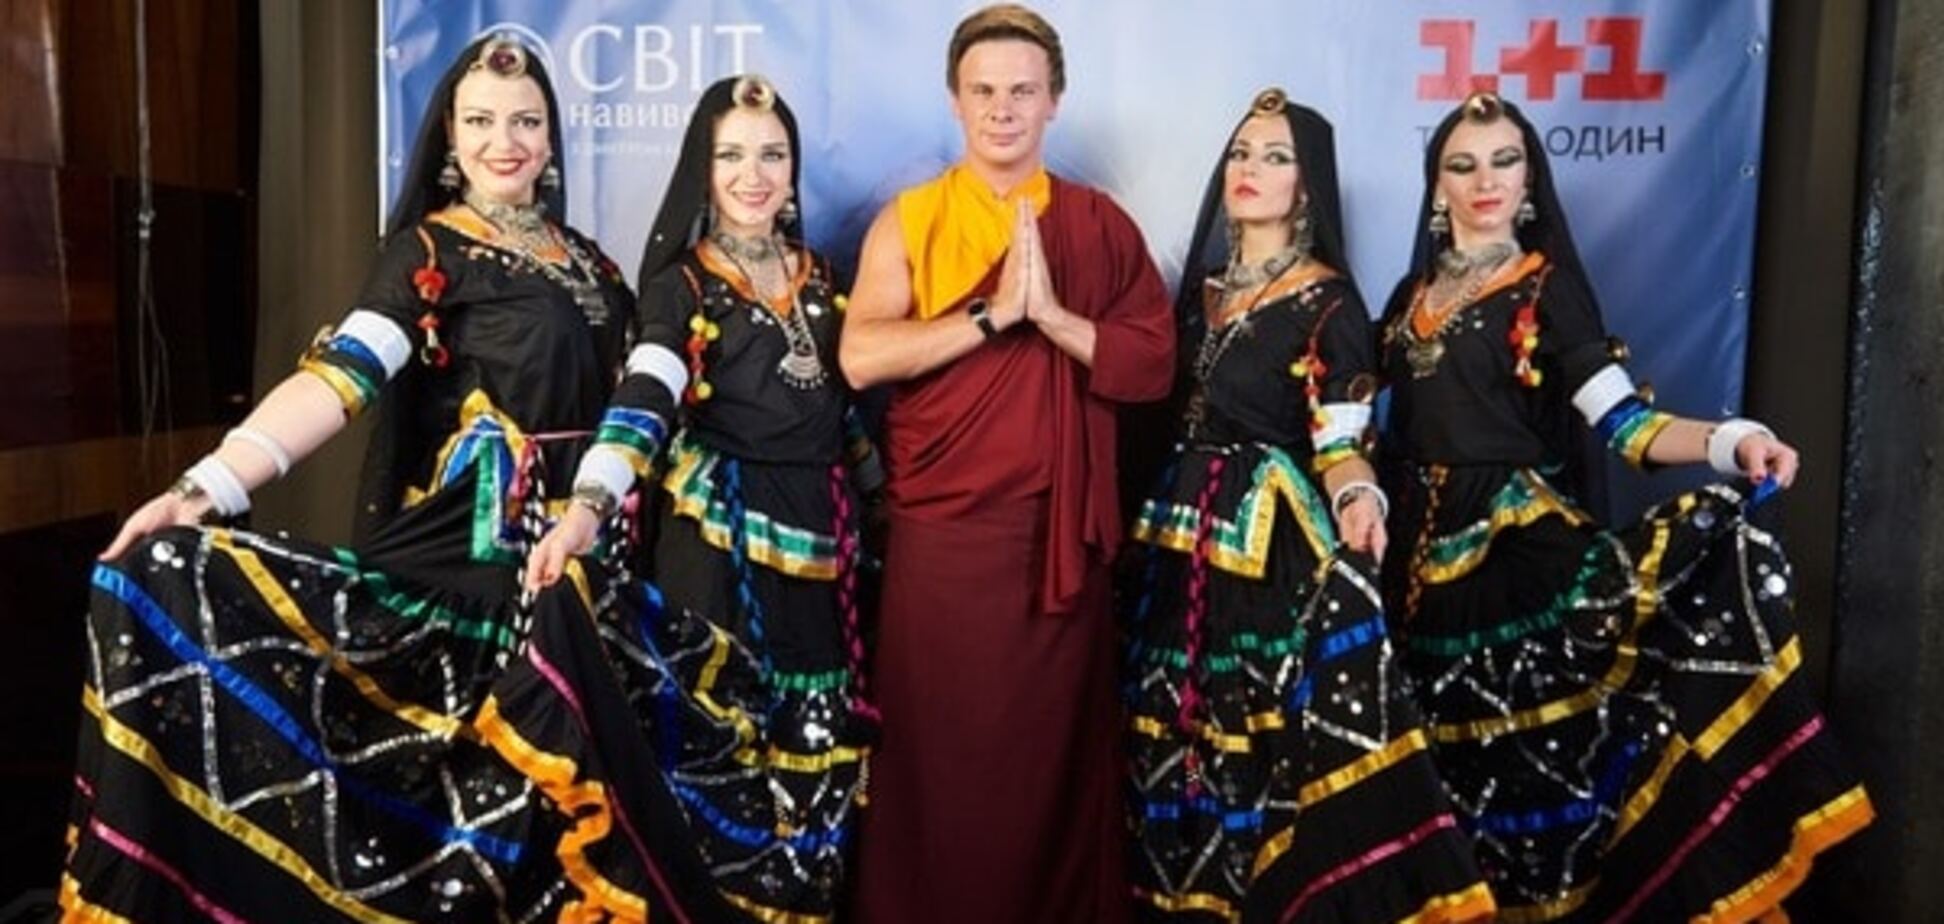 Дмитрий Комаров в образе тибетского монаха презентовал 8-й сезон экстремального тревел-шоу 'Мир наизнанку'